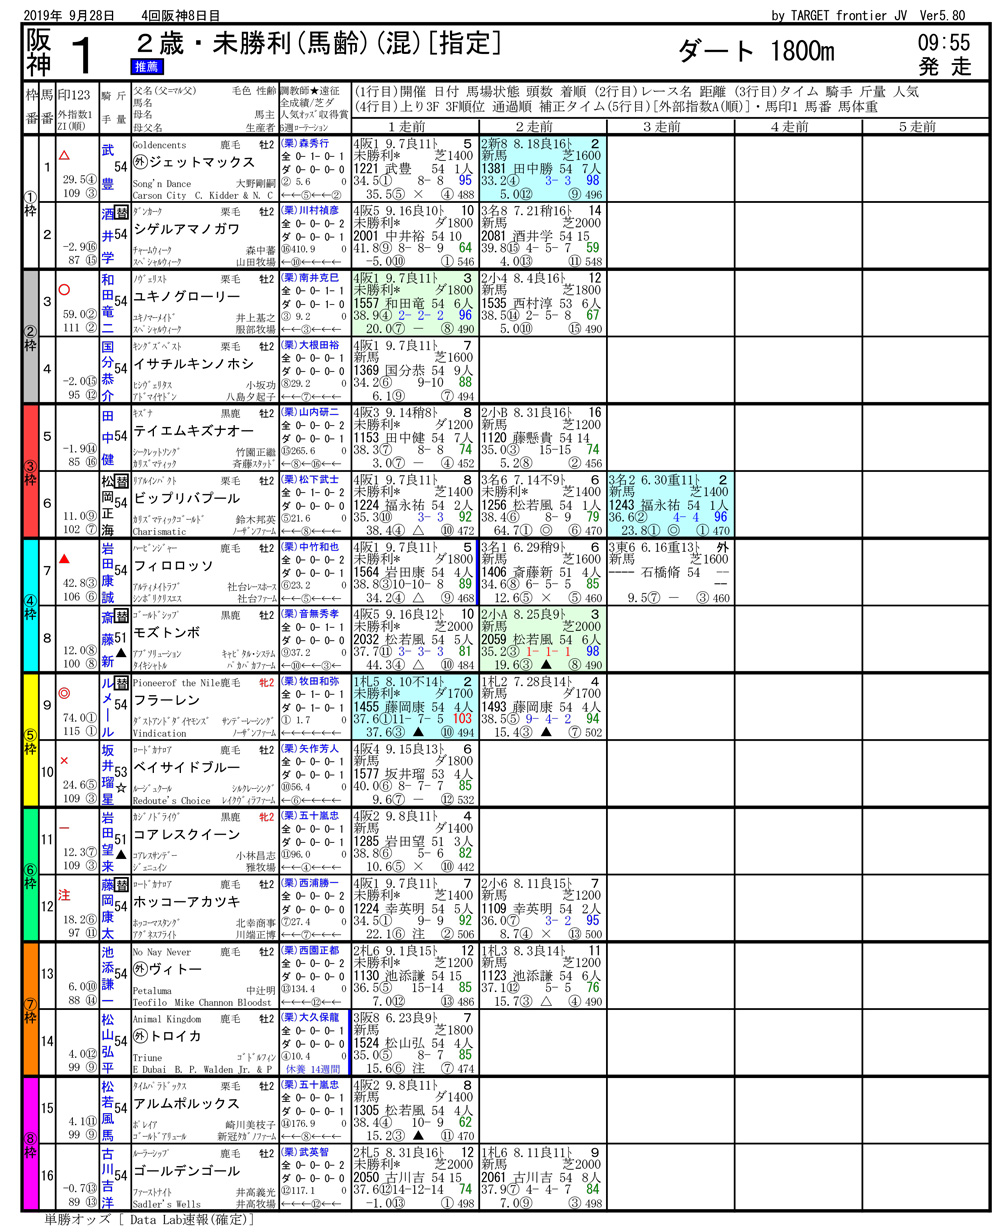 2019年09月28日開催 阪神01R 2歳未勝利 電脳競馬新聞3連単254,790円馬券的中